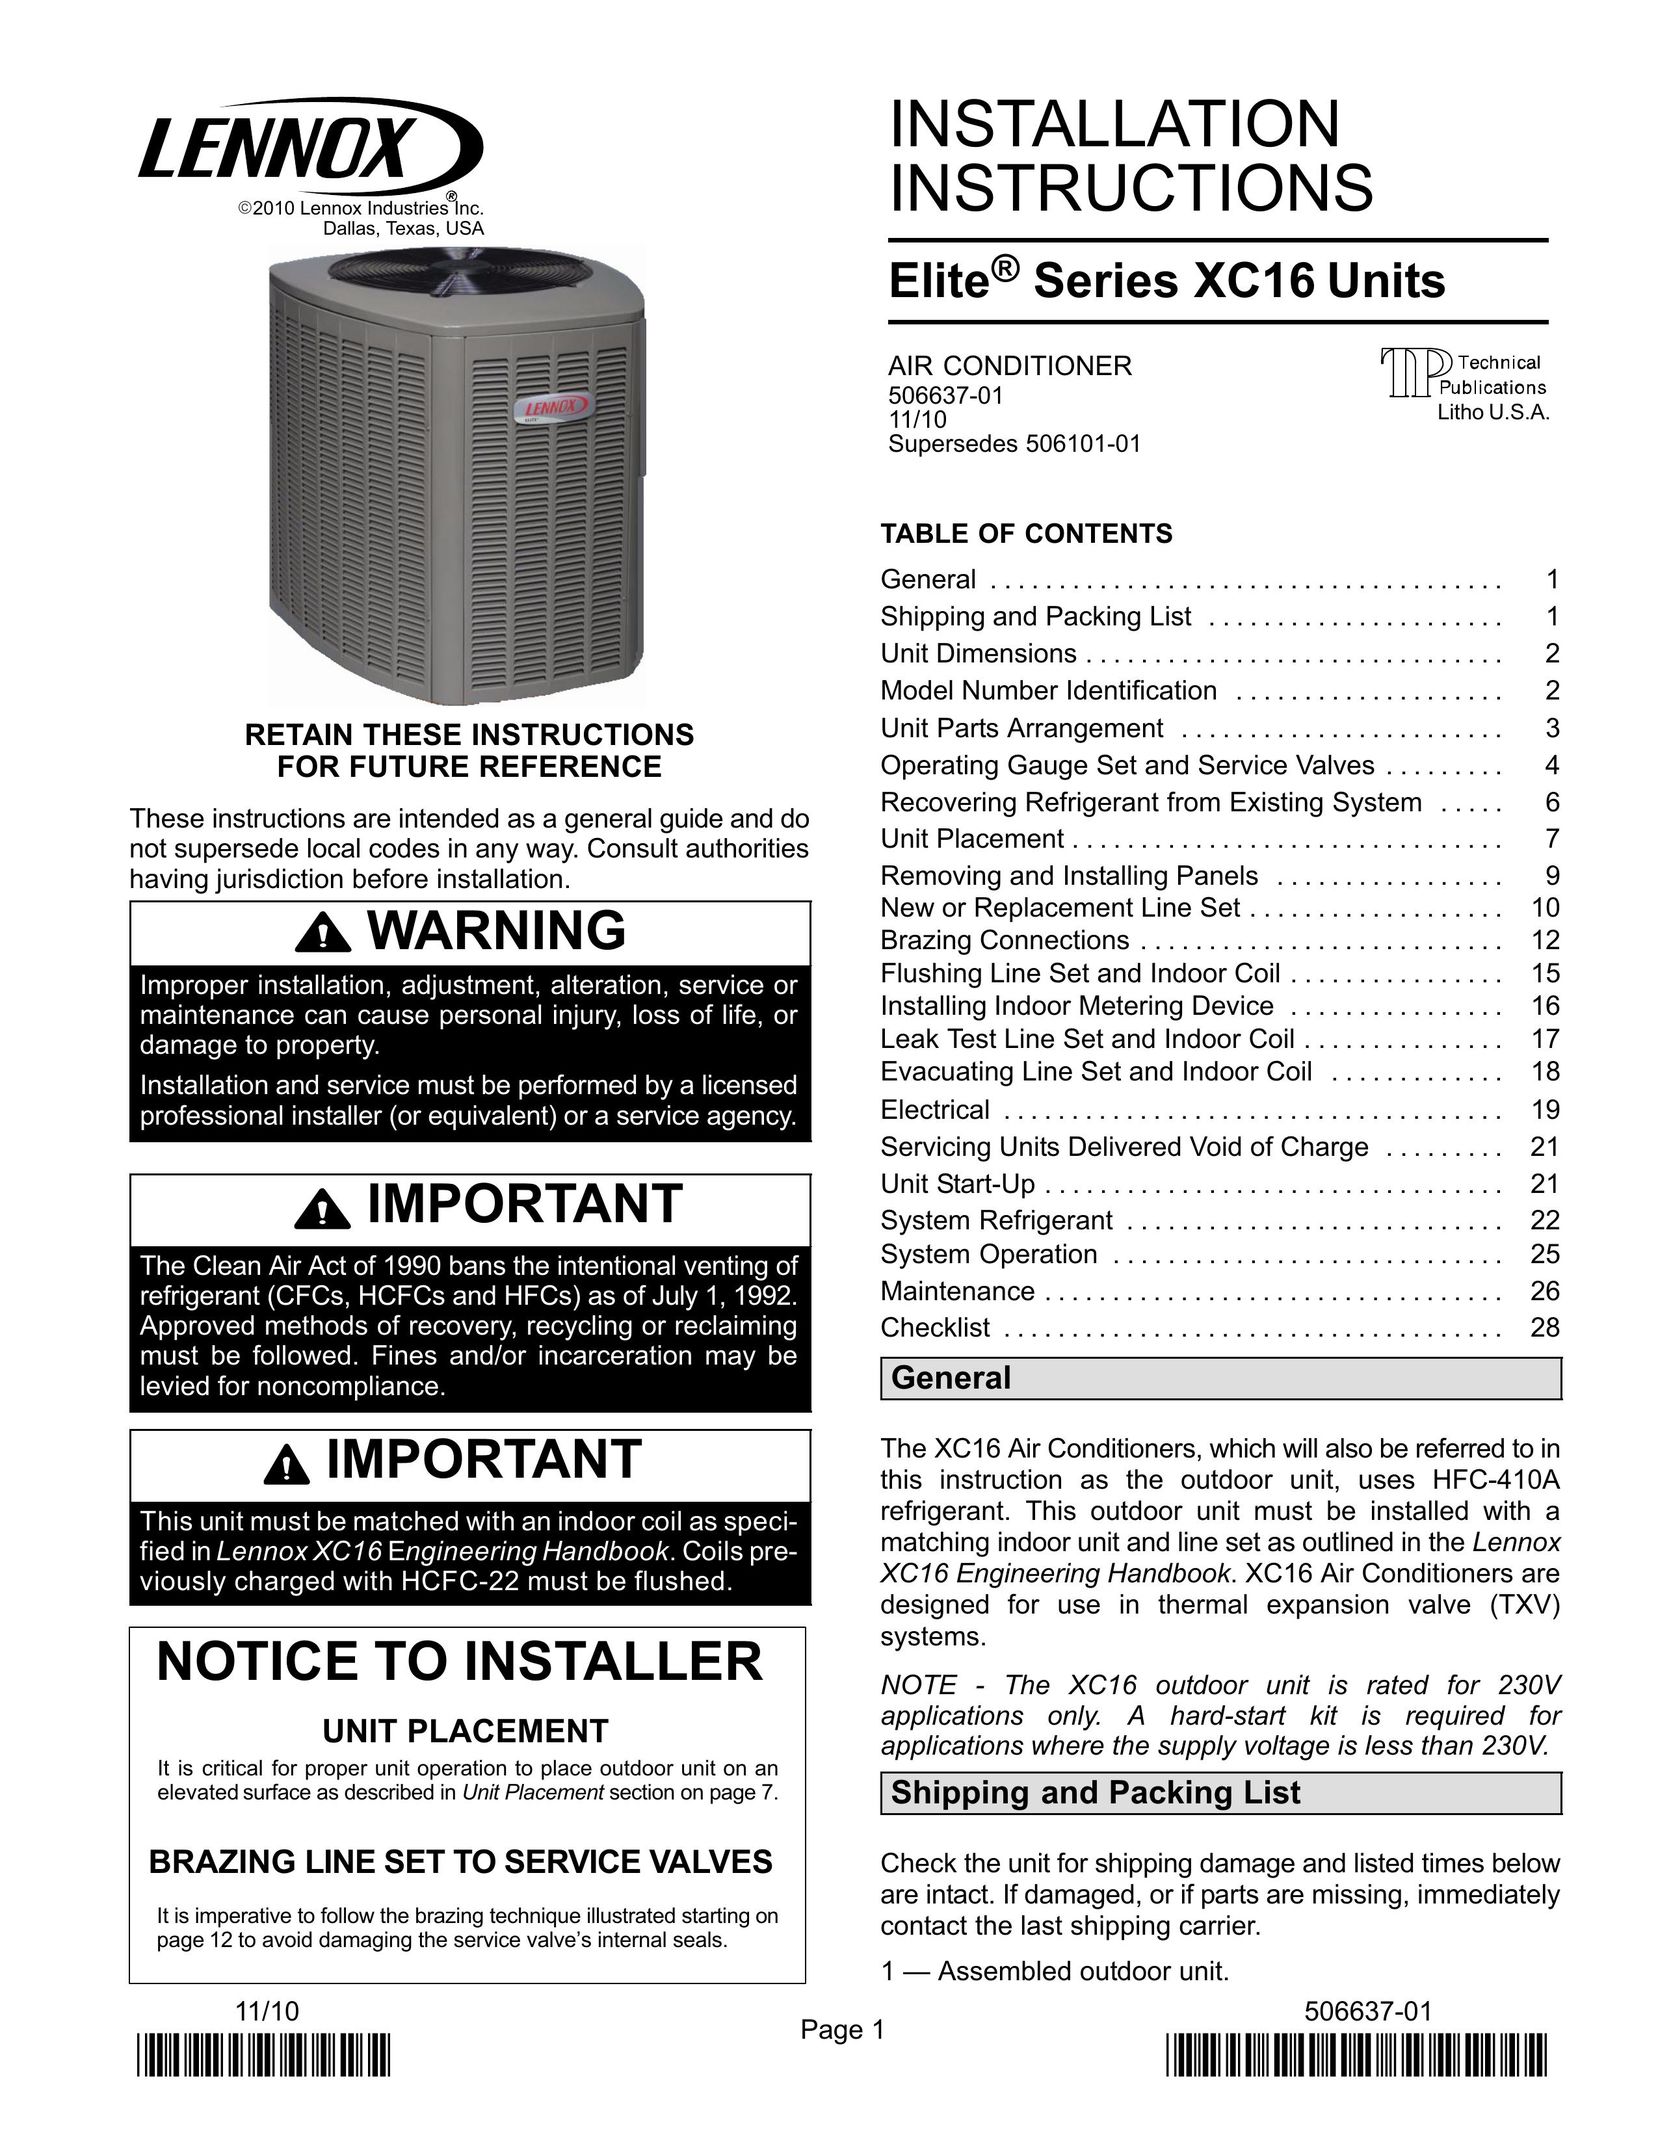 Lenox Elite Series X16 Air Conditioner Units Air Conditioner User Manual